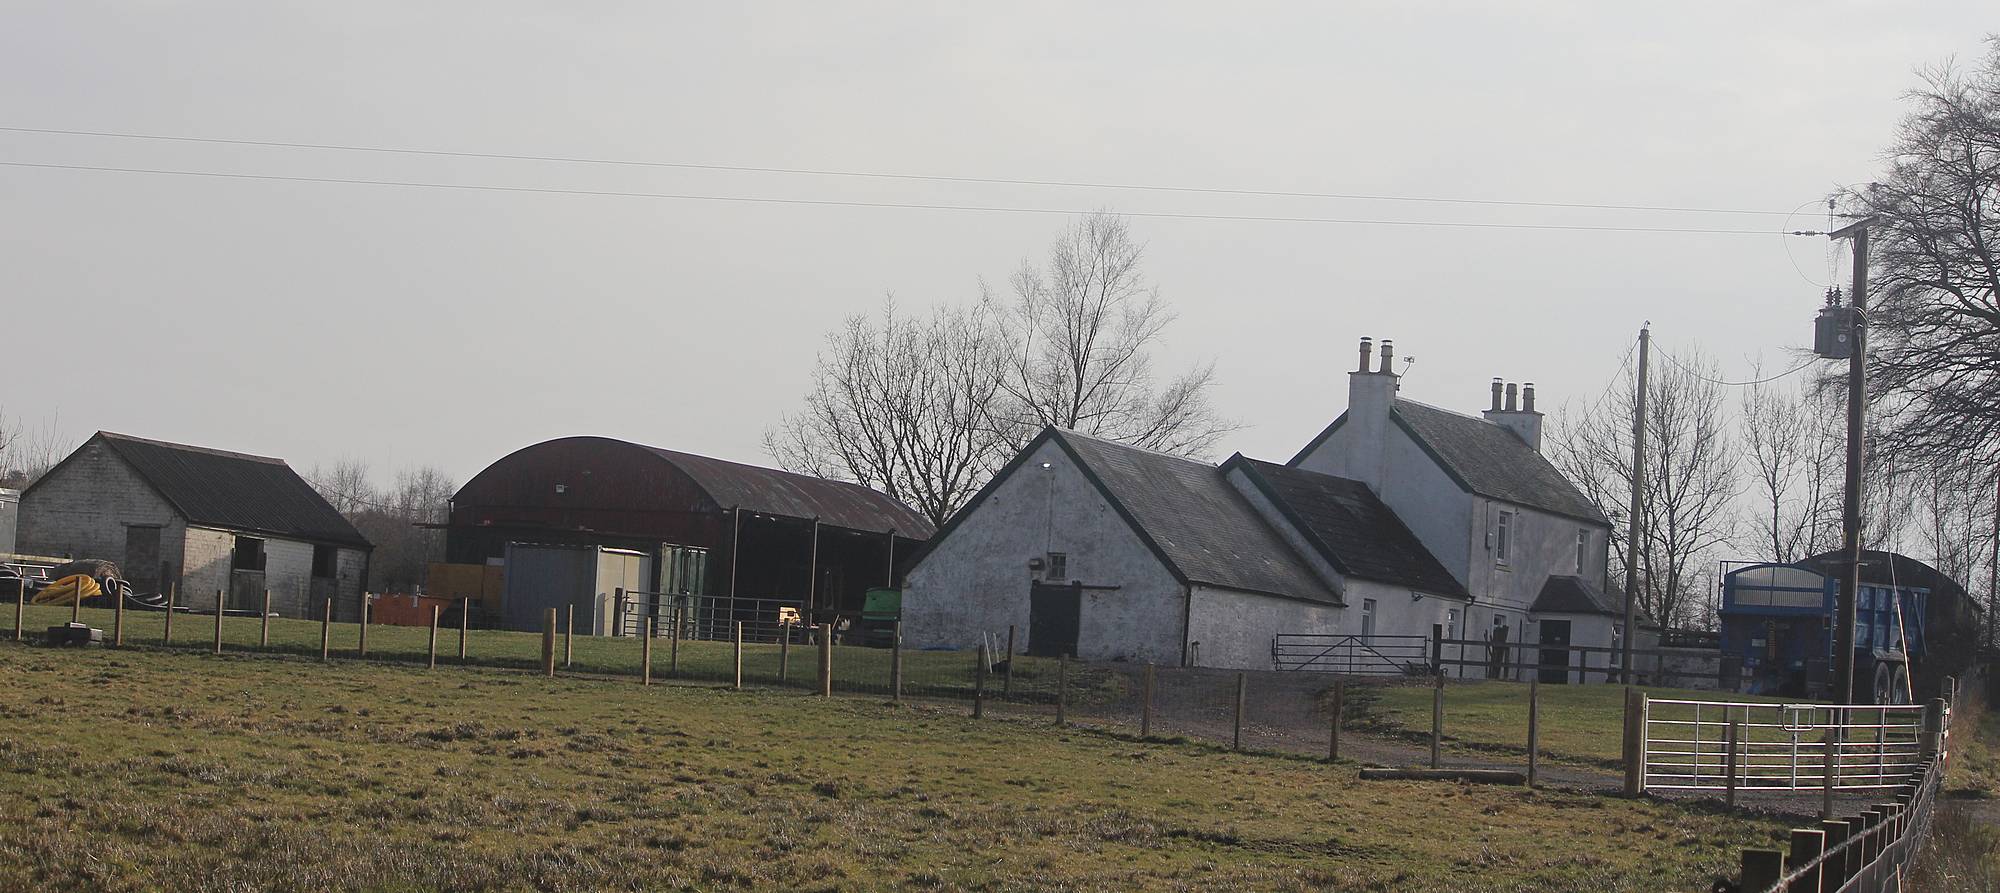 Dalquhandy Farm